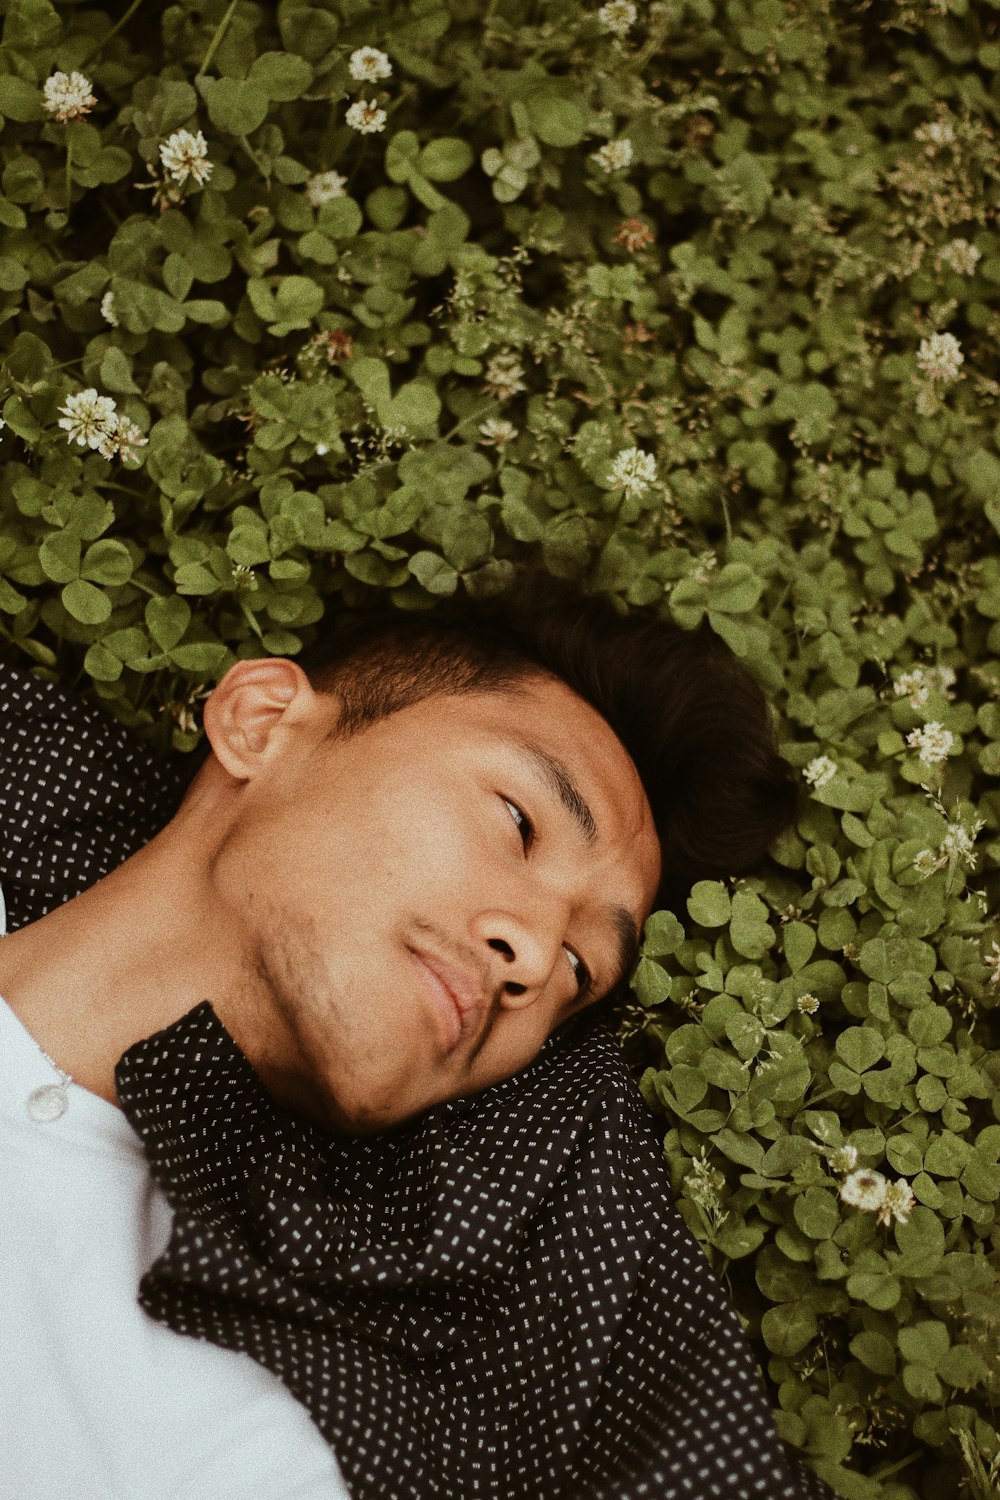 녹색 잎이 달린 식물에 누워있는 남자